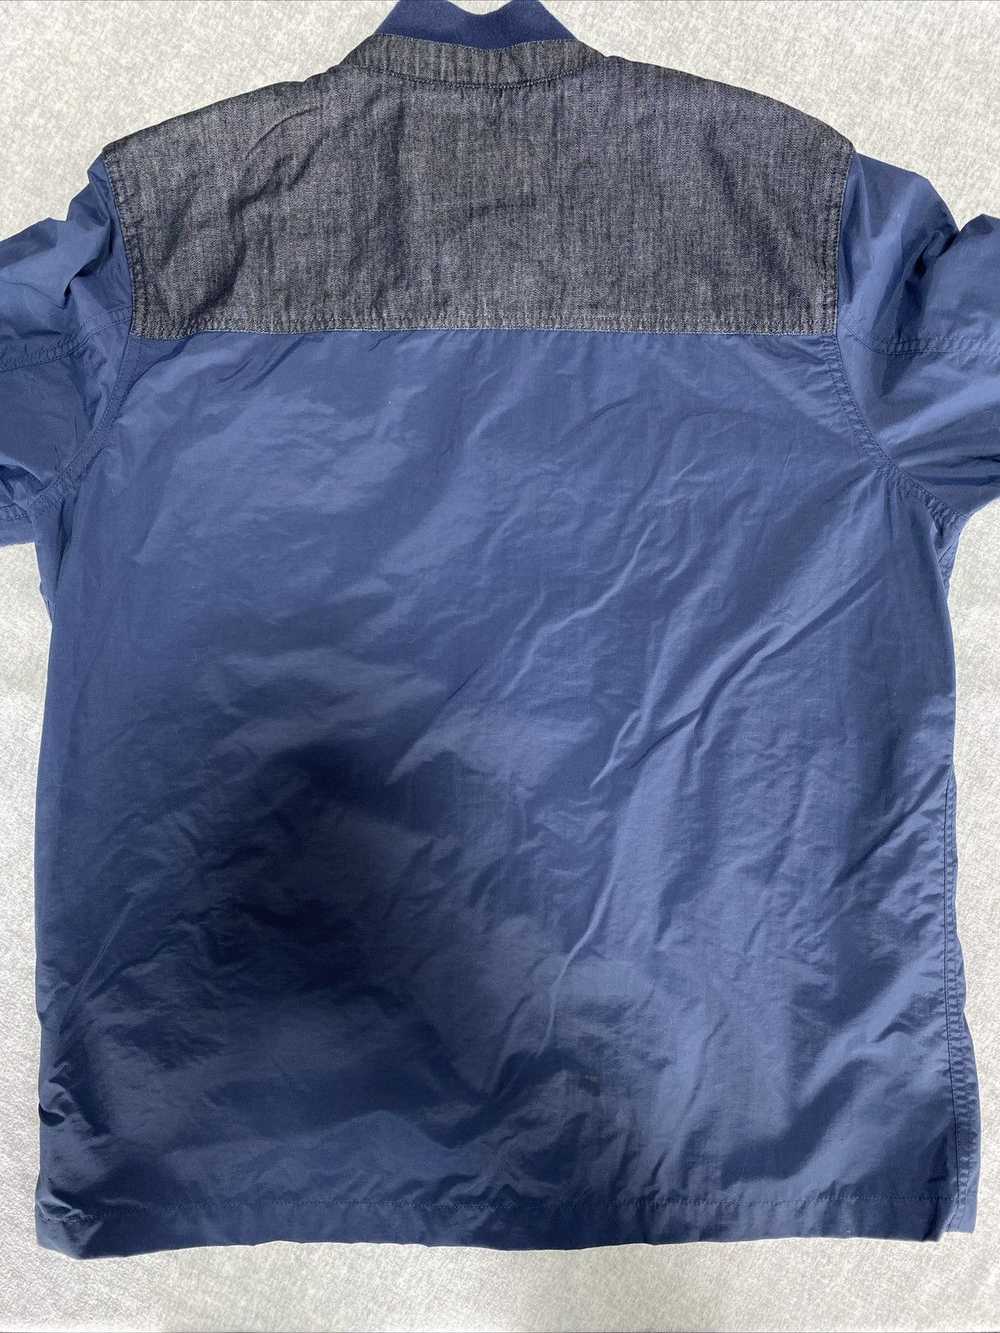 Levi's Levis Shacket Mens Extra Large Blue Jacket… - image 2